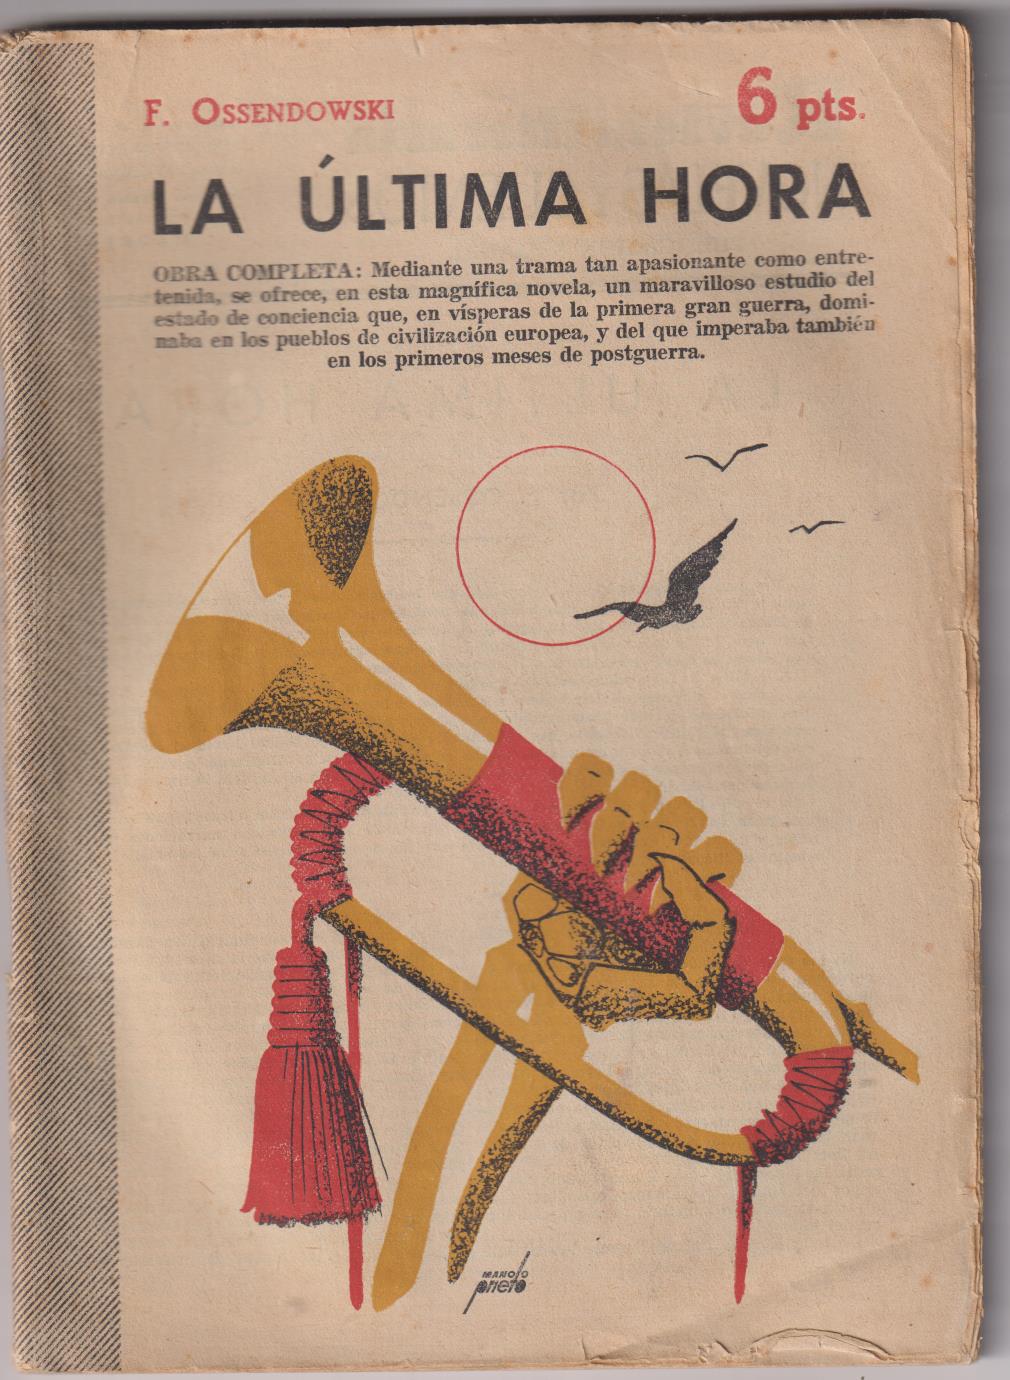 Revista Literaria Novelas y Cuentos nº 1289. La Última hora por F. Ossendowski, Año 1953